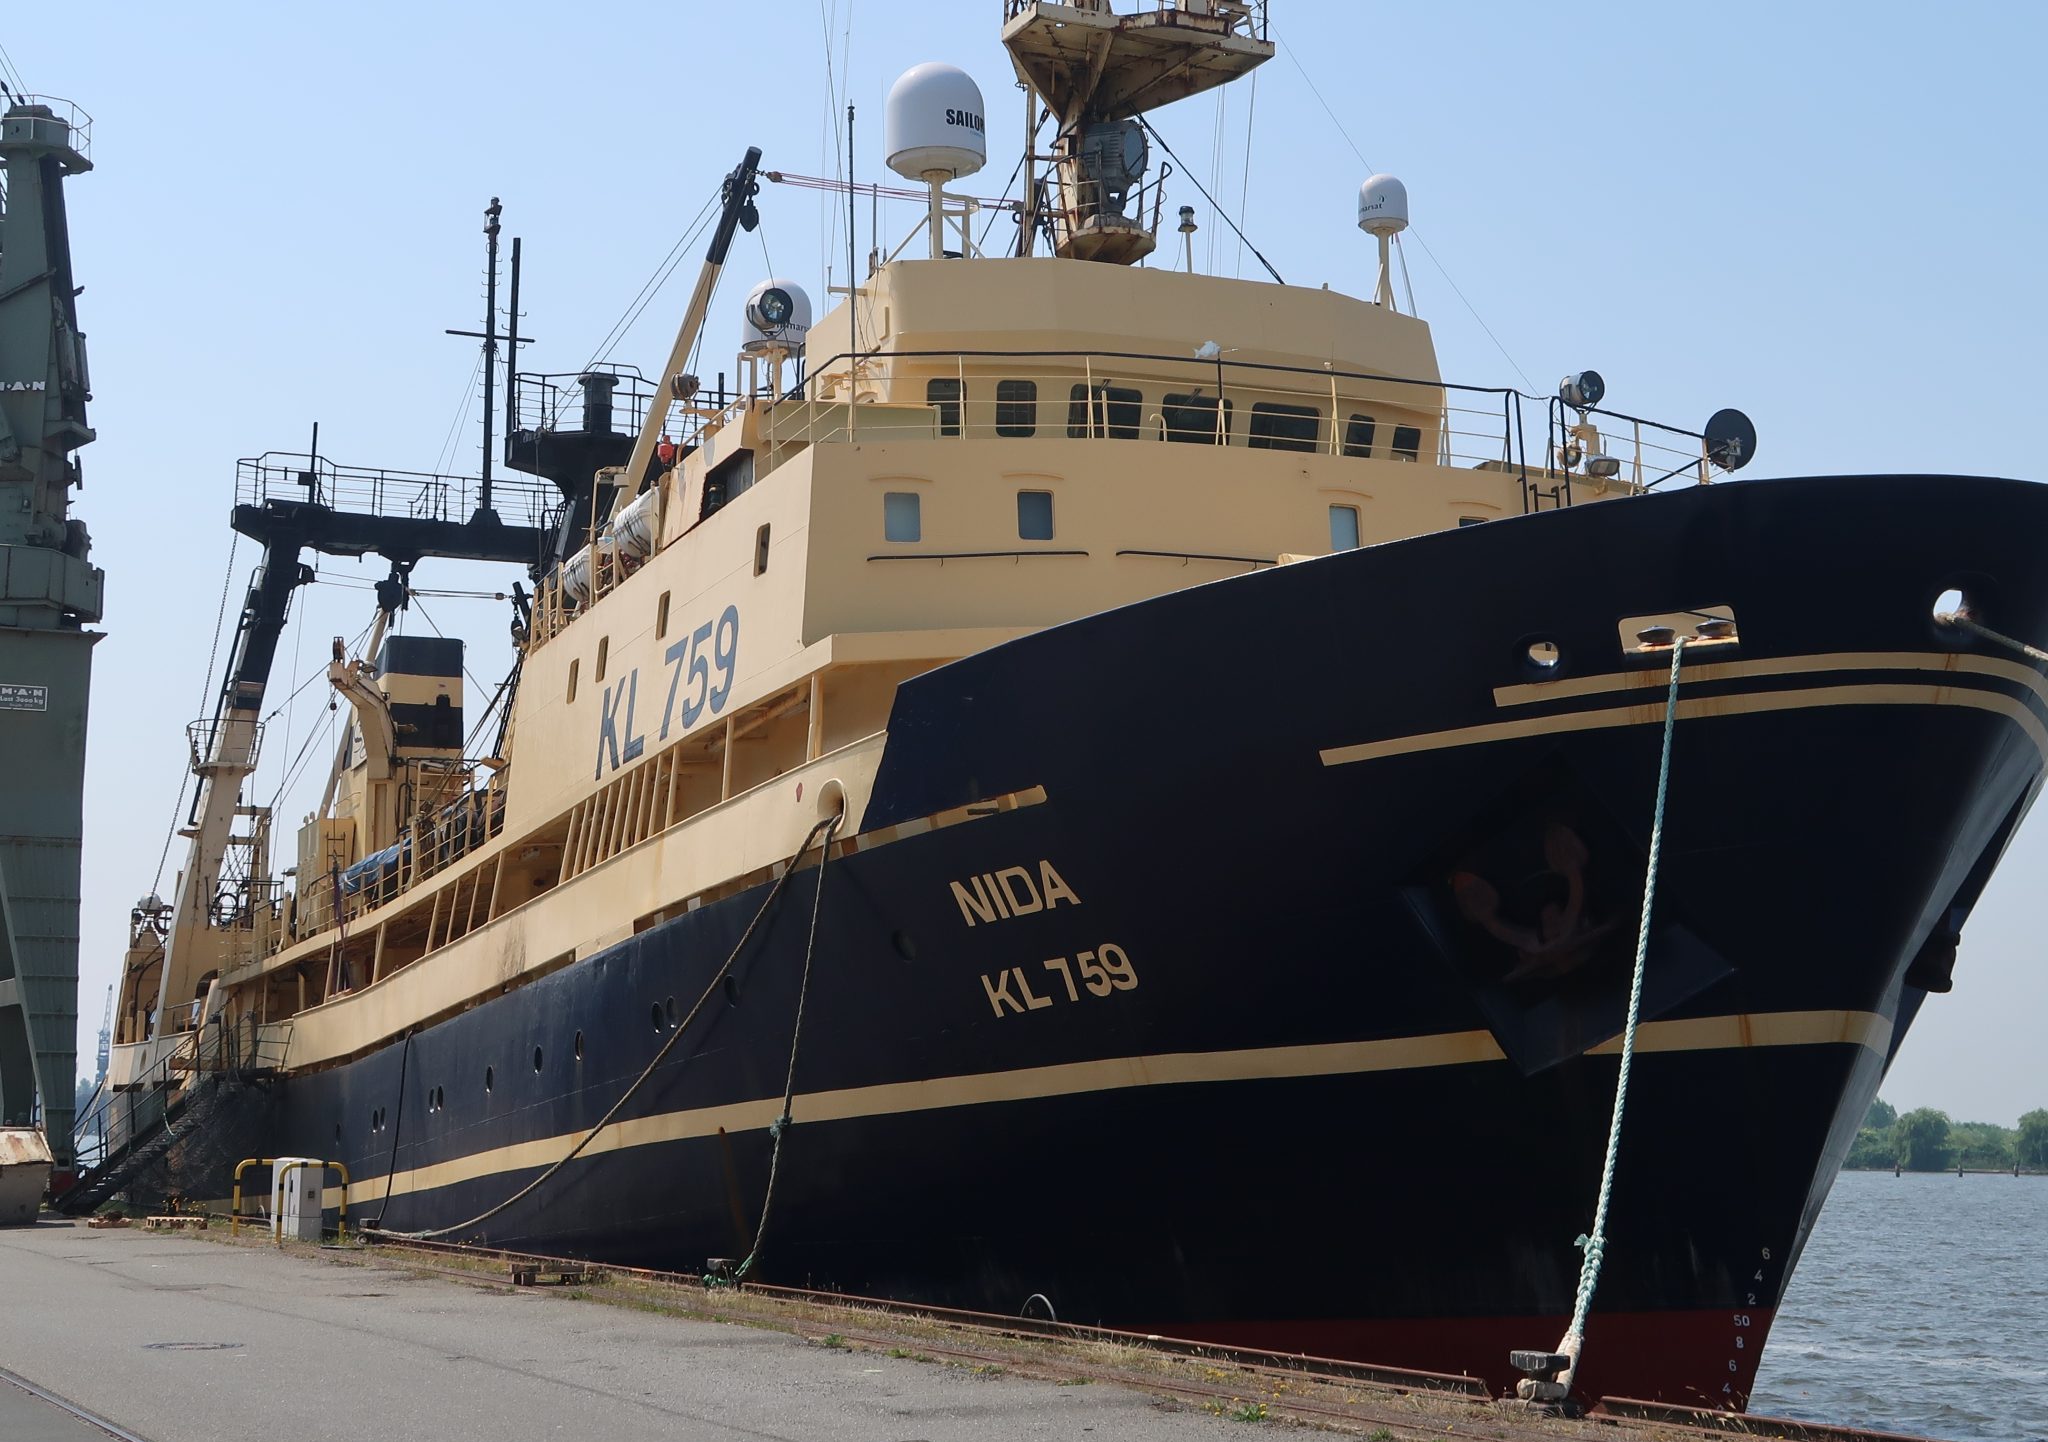 De KL-759 Nida voor de kade van Doggerbank Seefischerei in Bremerhaven.